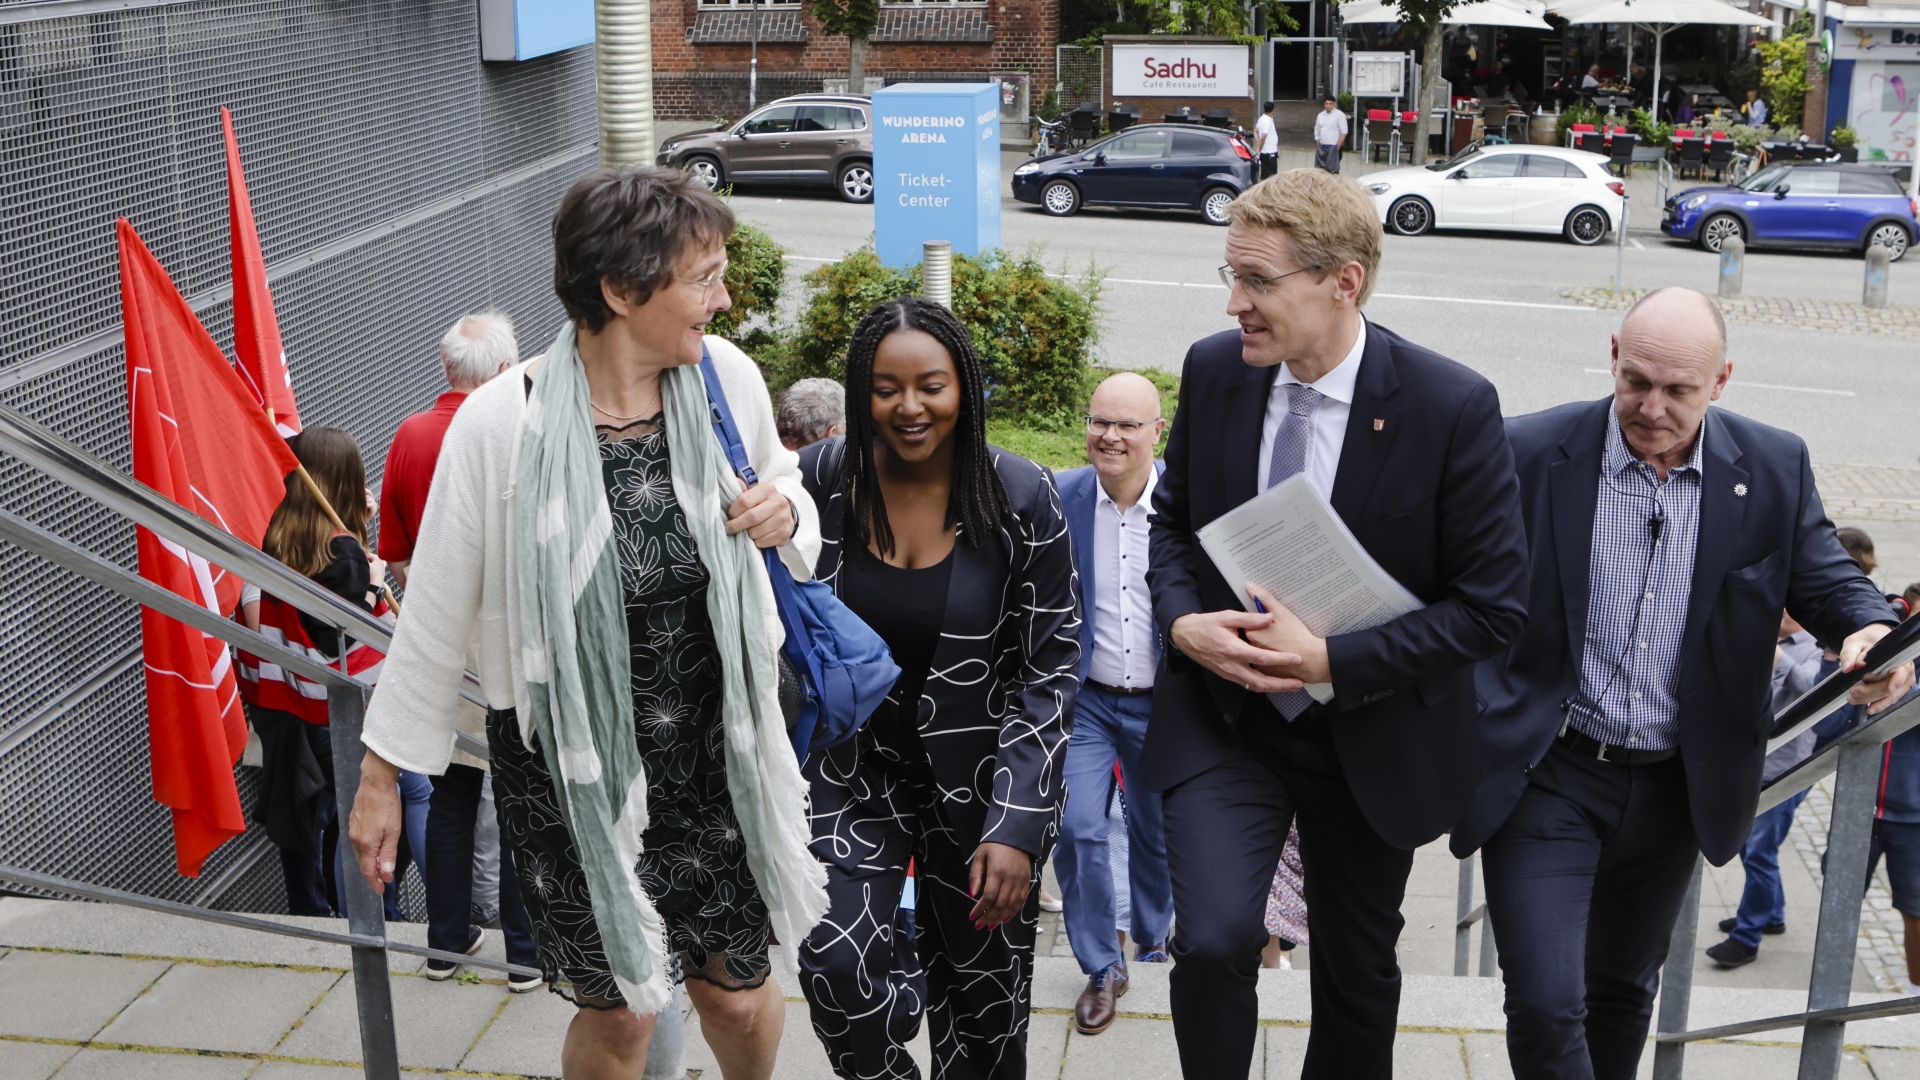 Monika Heinold und Aminata Touré von den Grünen sowie Schleswig-Holsteins Ministerpräsident Daniel Günther (CDU) gehen eine Treppe hinauf.  | dpa